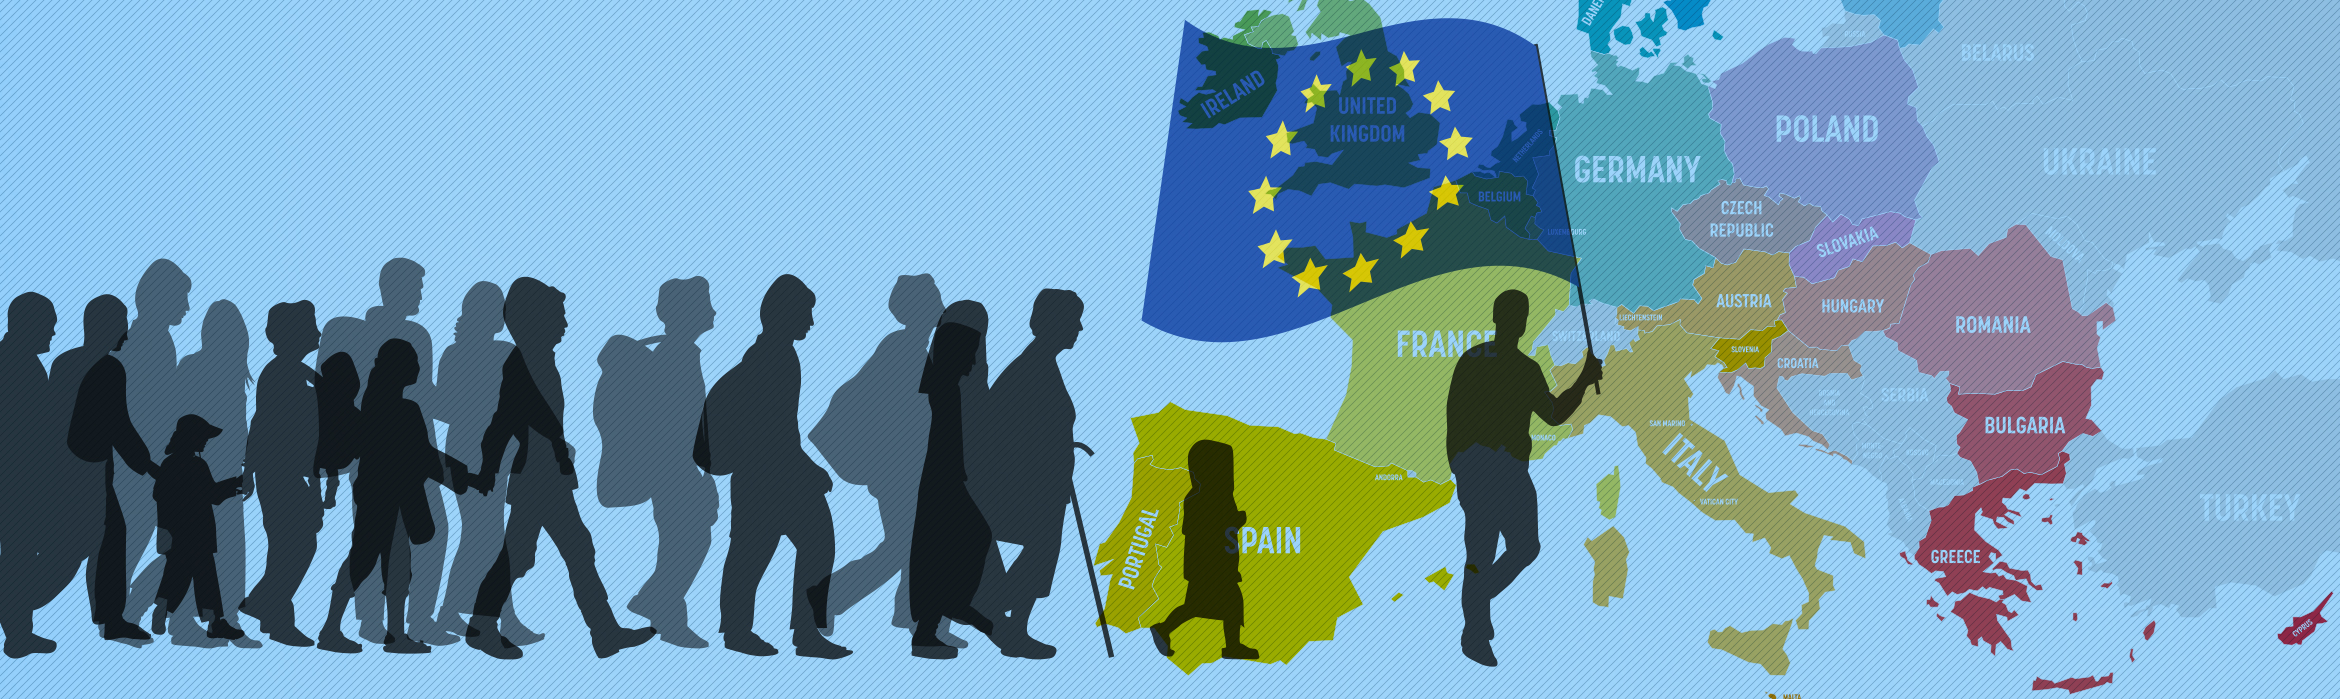 Composición mapa de la UE con un grupo de personas superpuesto donde el primero porta la bandera de la UE